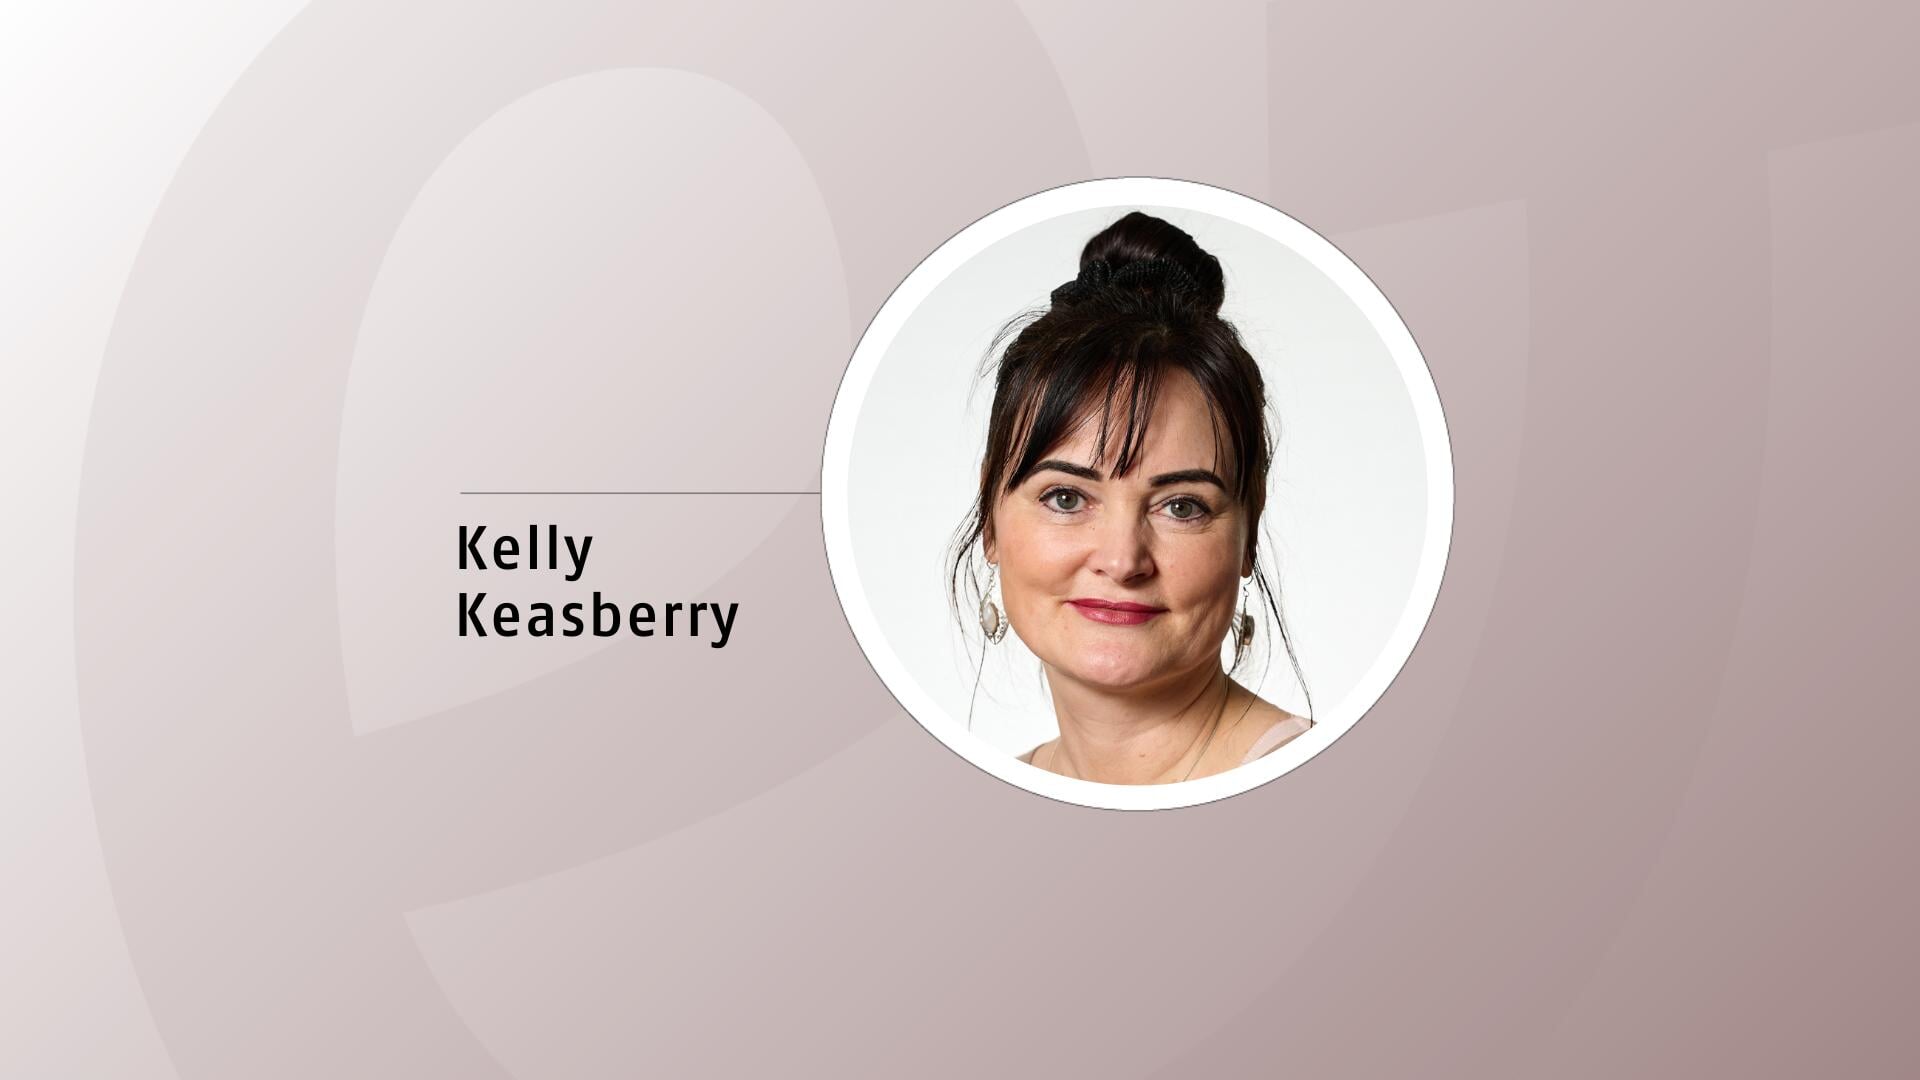 Kelly Keasberry is theoloog en pastoraal medewerker bij ziekenhuis AZ Monica in Deurne en Antwerpen.